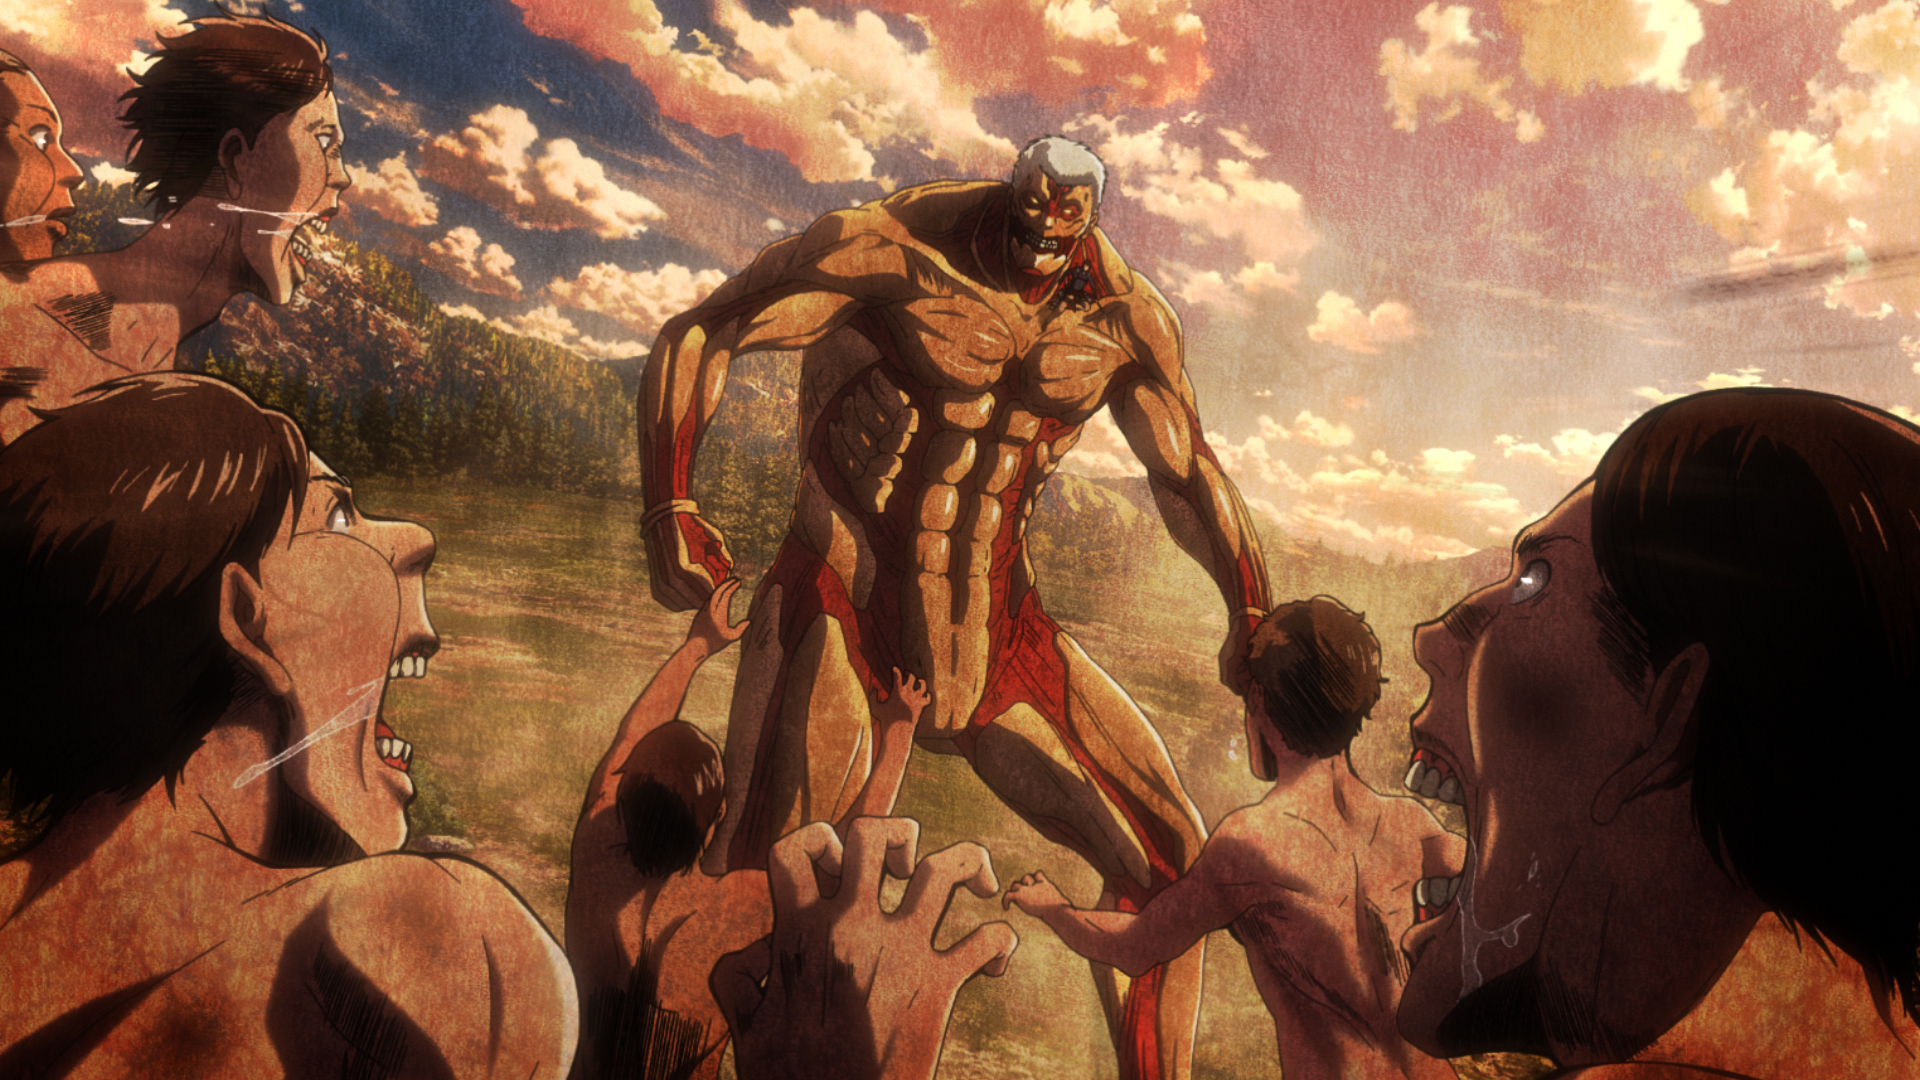 Review: Attack on Titan, o anime dos titãs